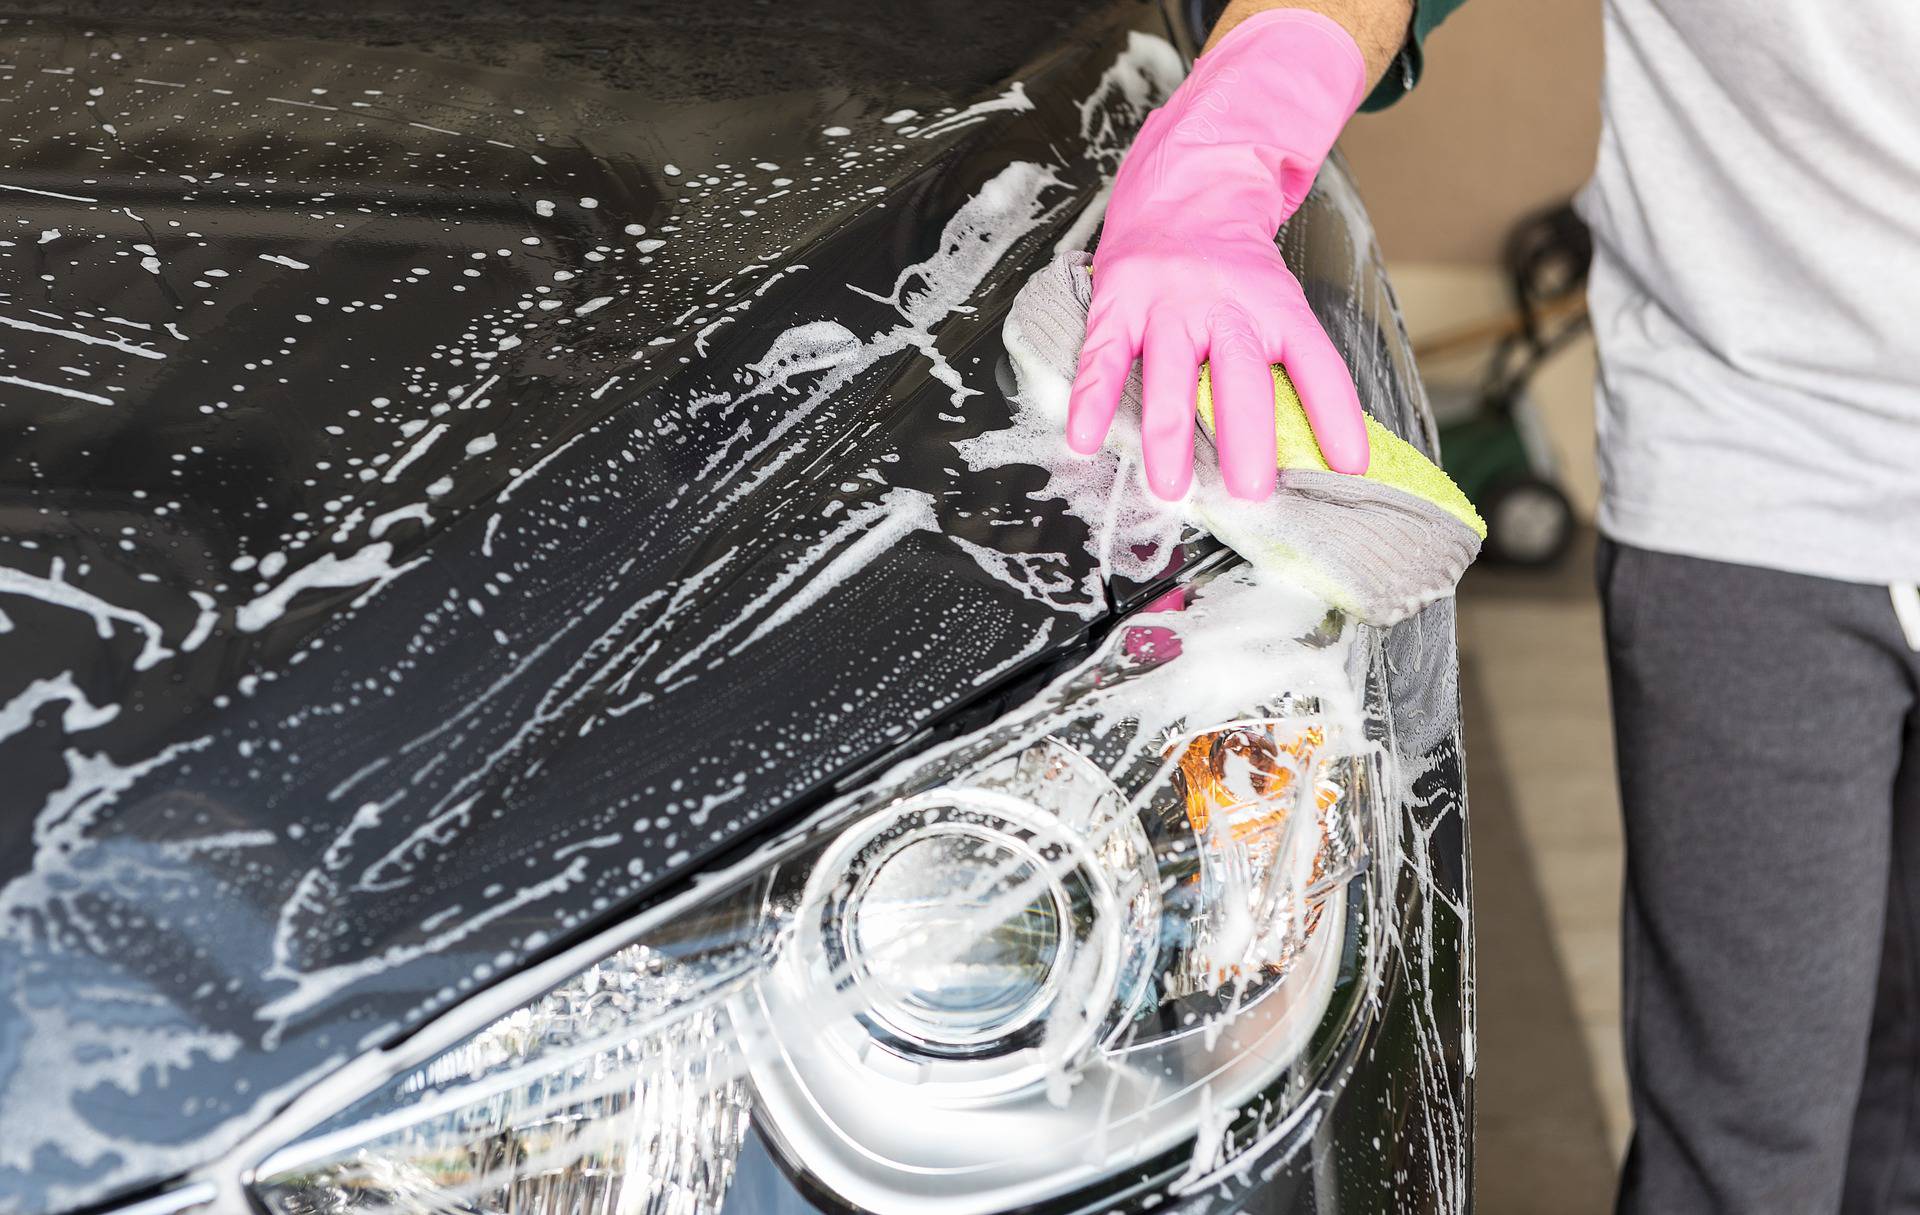 Ovako ćete najbolje oprati svoj auto nakon duge i hladne zime